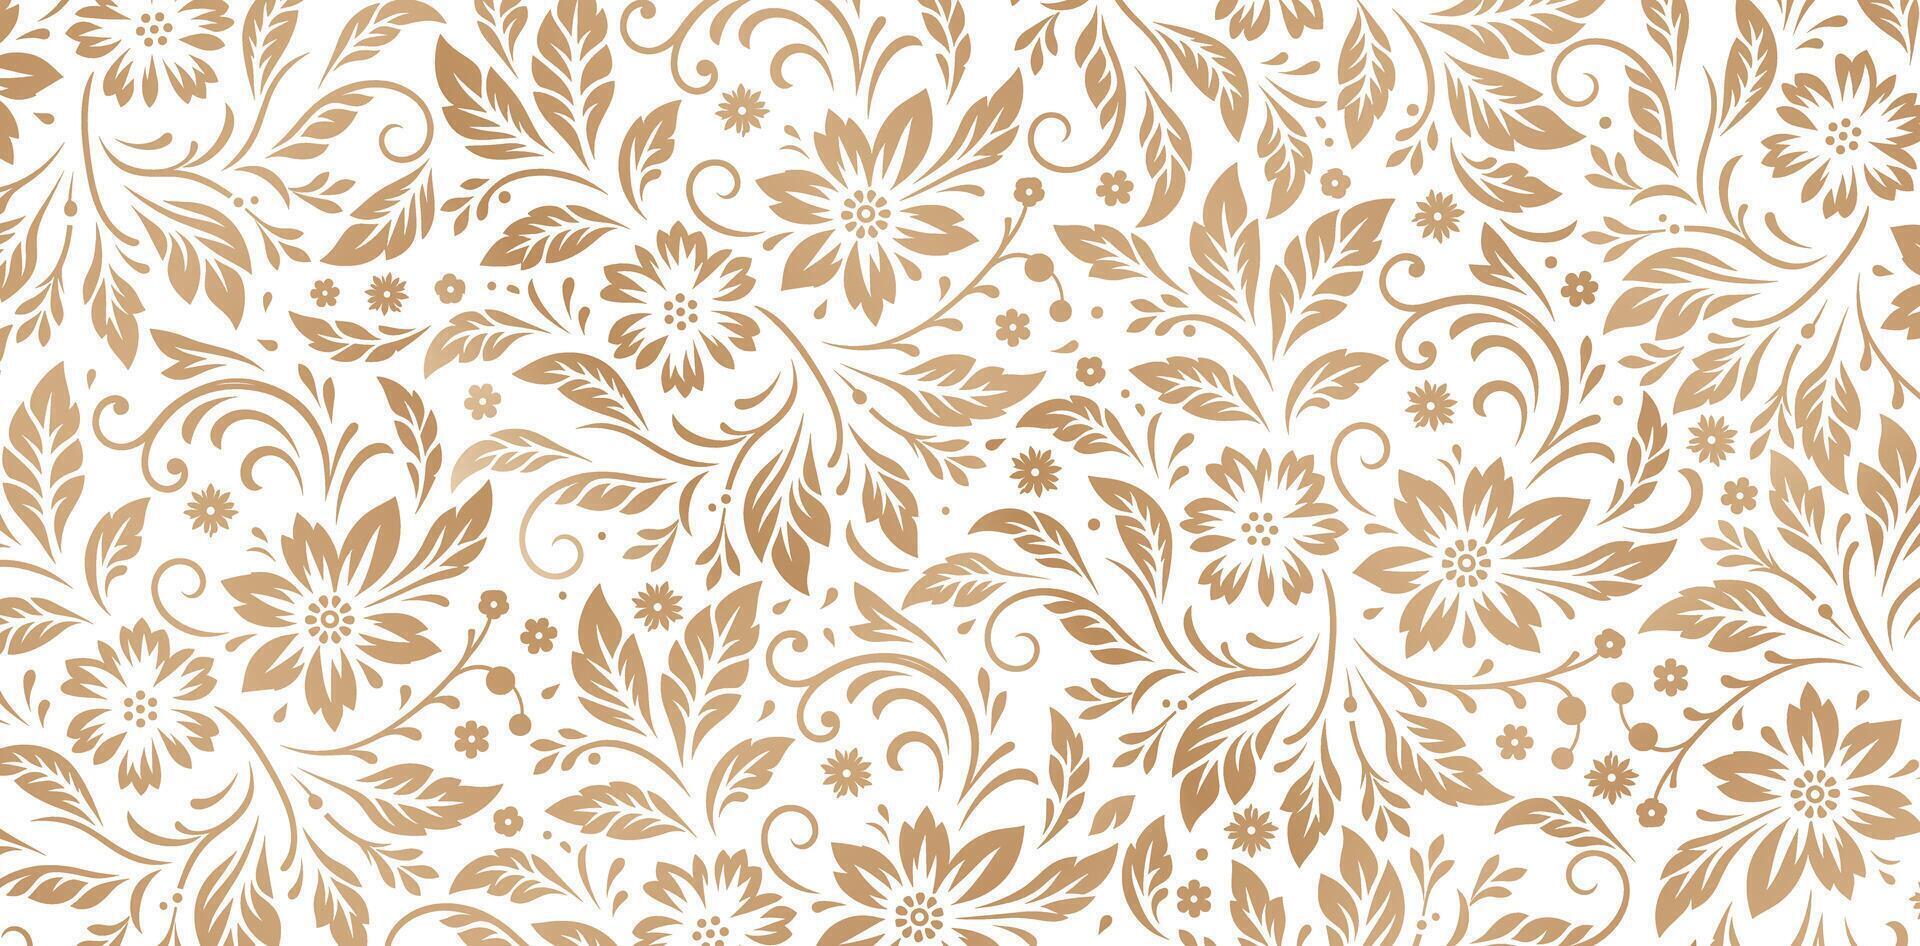 patroon met bloemen ornamenten gouden kleuren geïsoleerd wit achtergronden voor textiel muur papieren, boeken omslag, digitaal interfaces, prints Sjablonen materiaal kaarten uitnodiging, omhulsel papieren vector